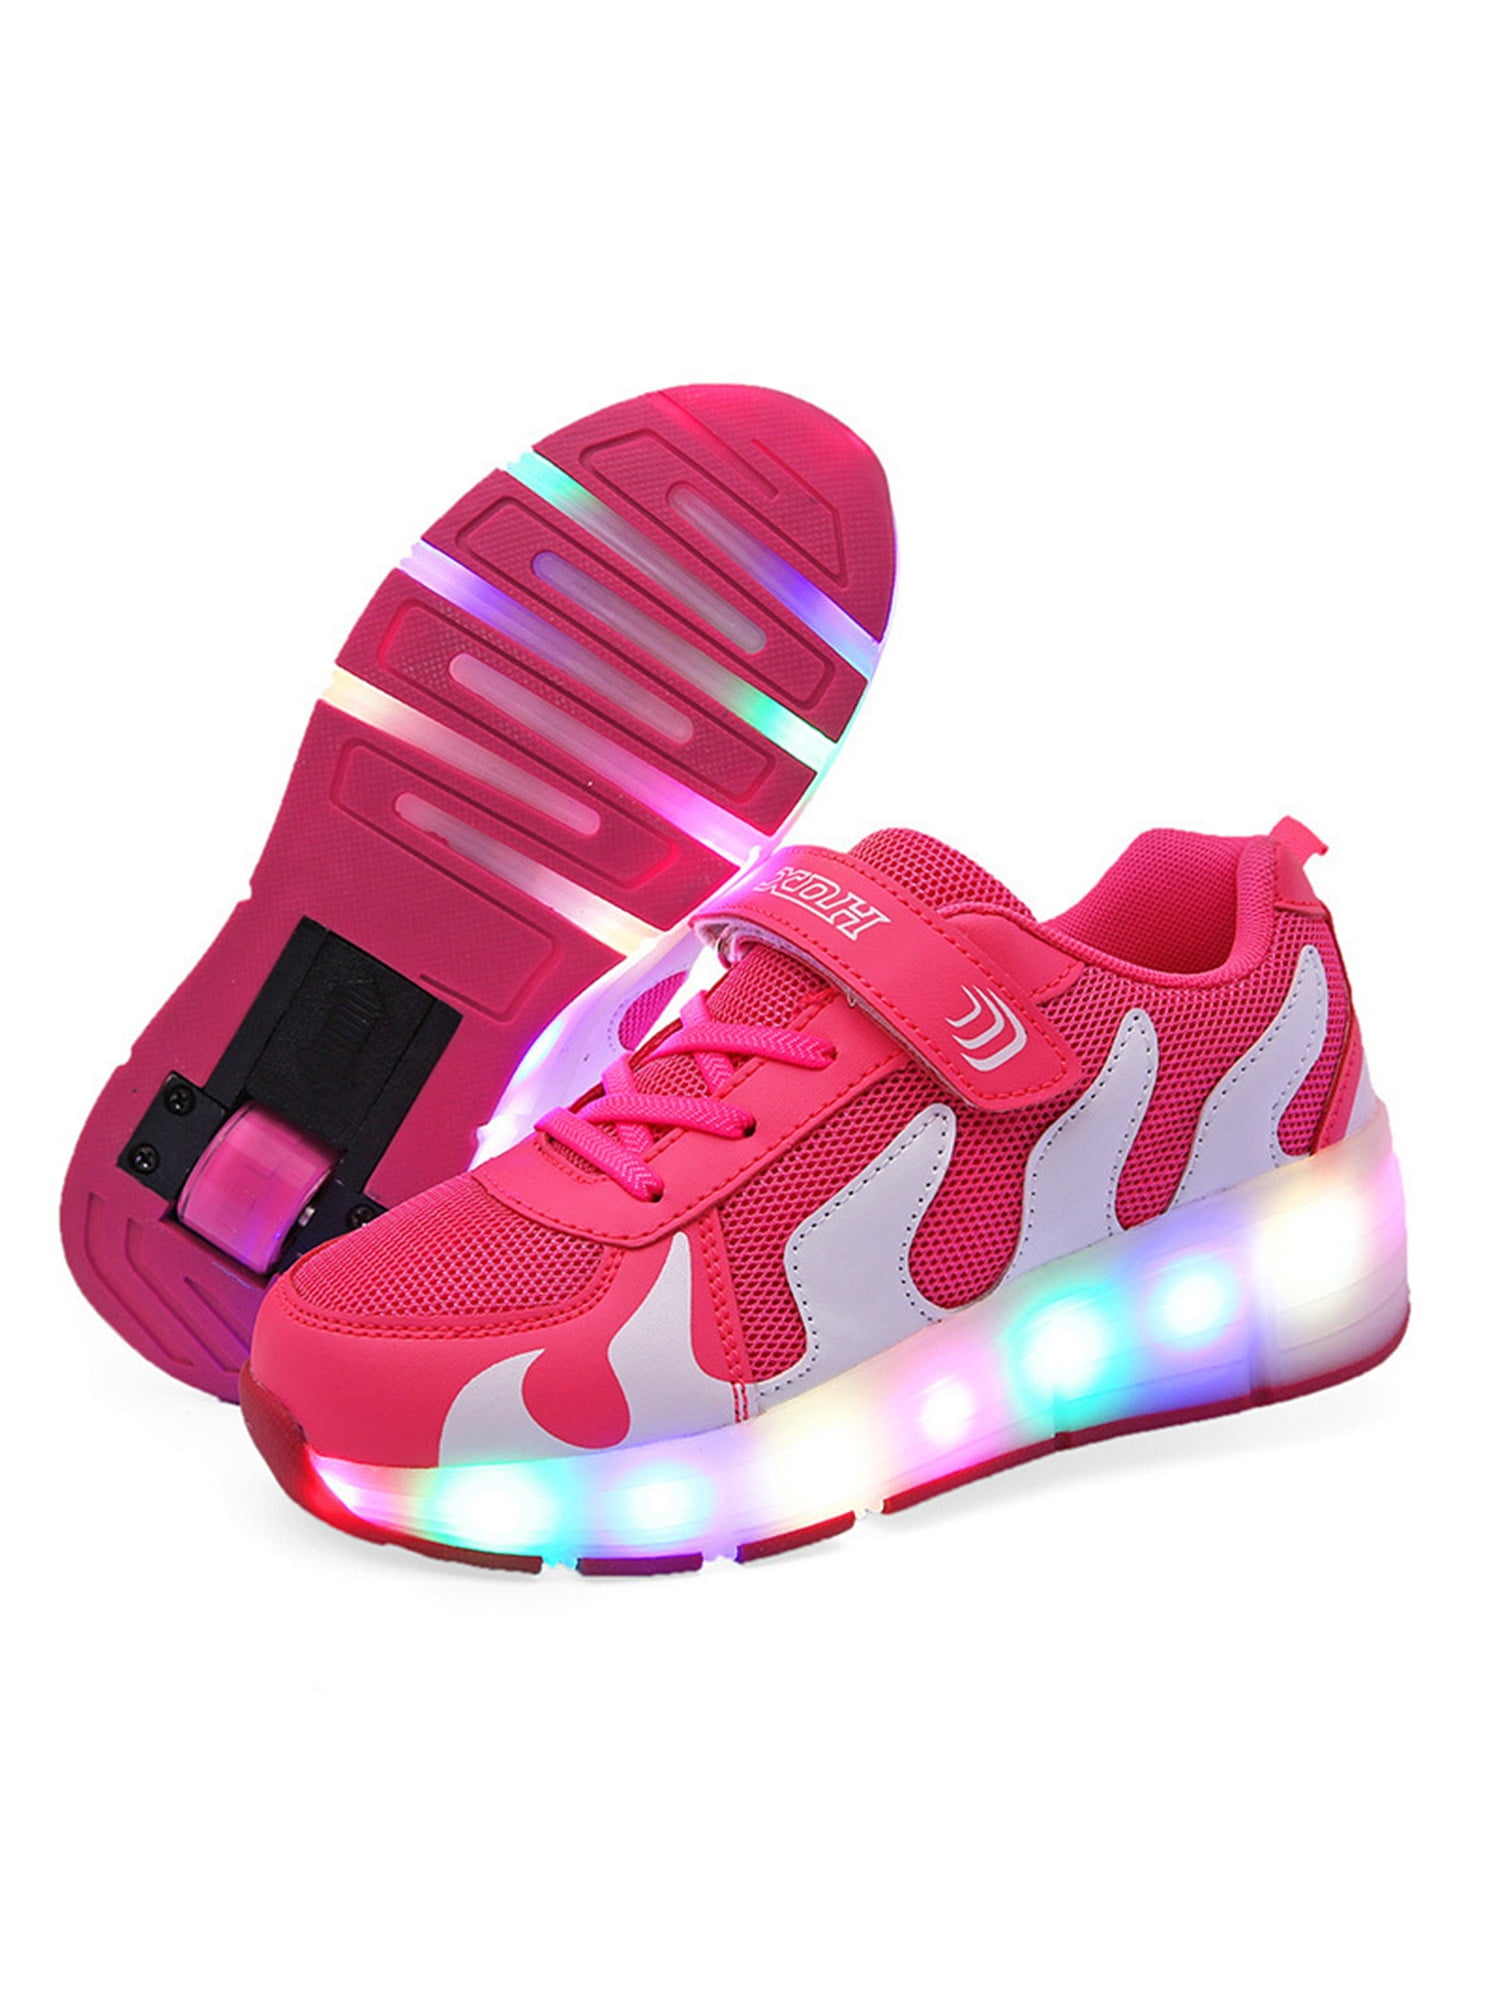 wheels Mesh shoes single wheel waterproof 7 colorful LED 